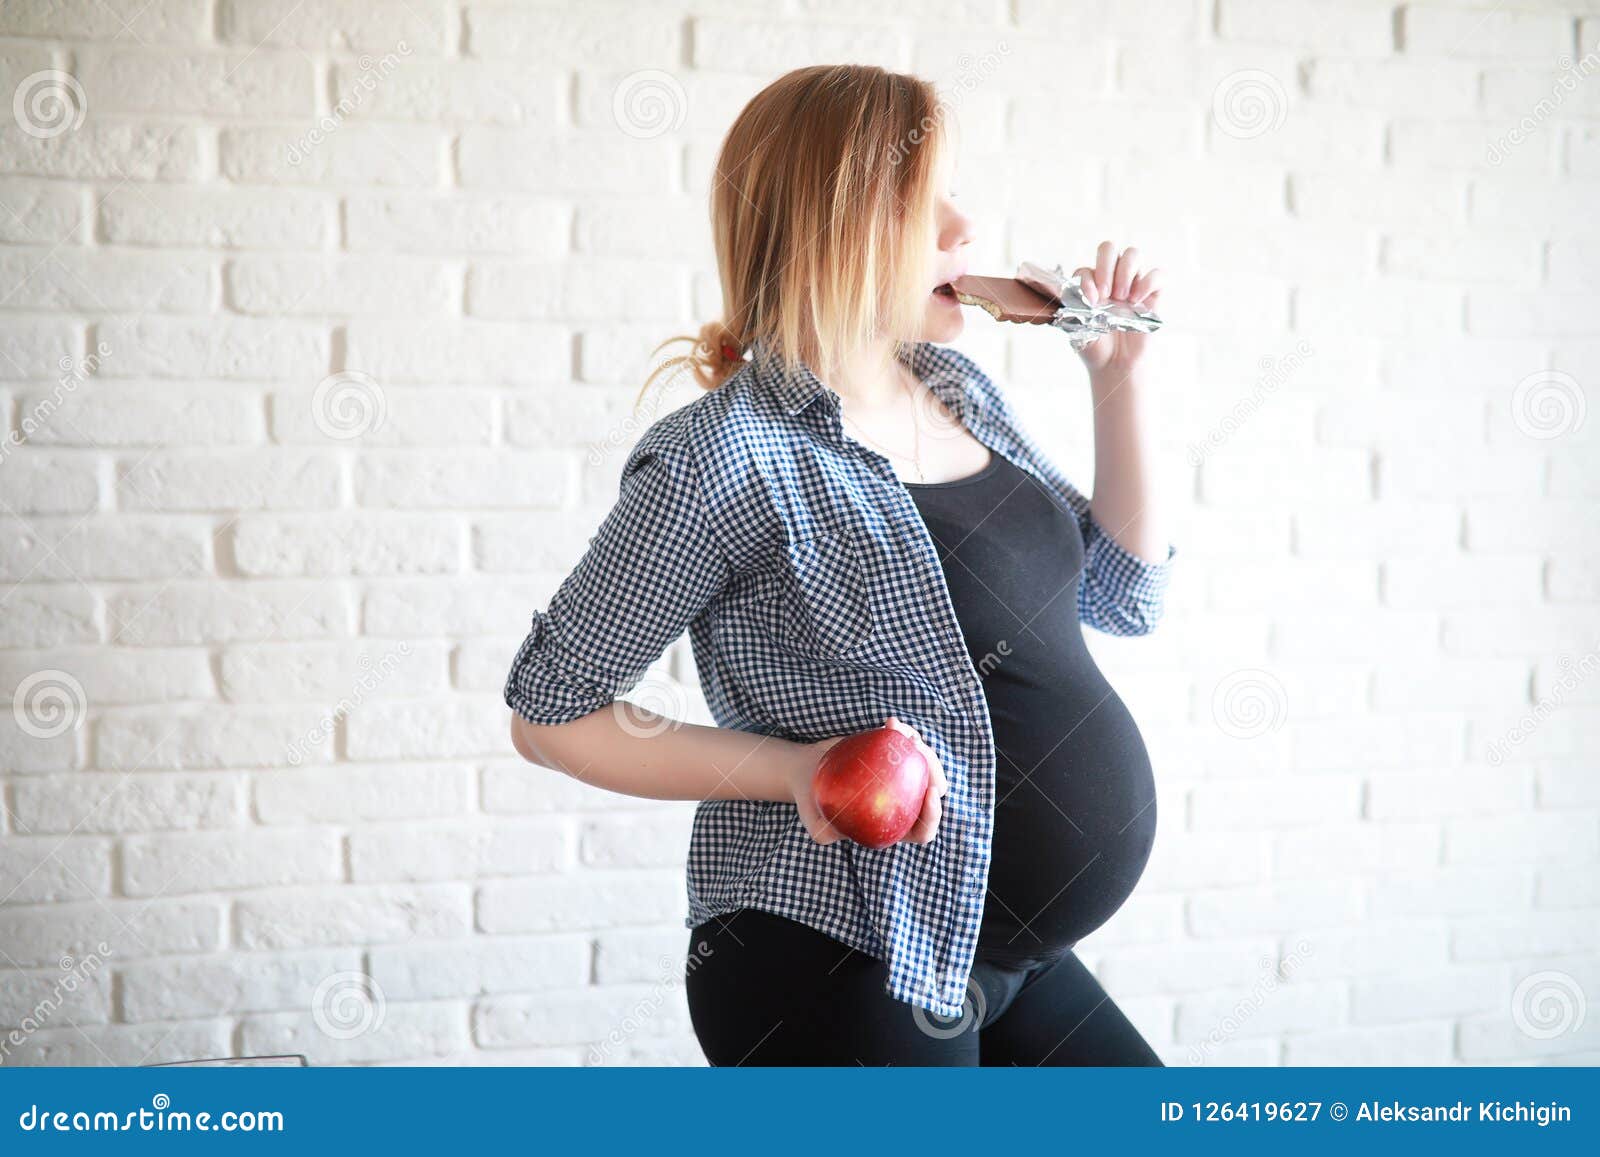 Забеременела от учителя. Беременные учителя. Беременные учительницы. Фото беременных учителей.